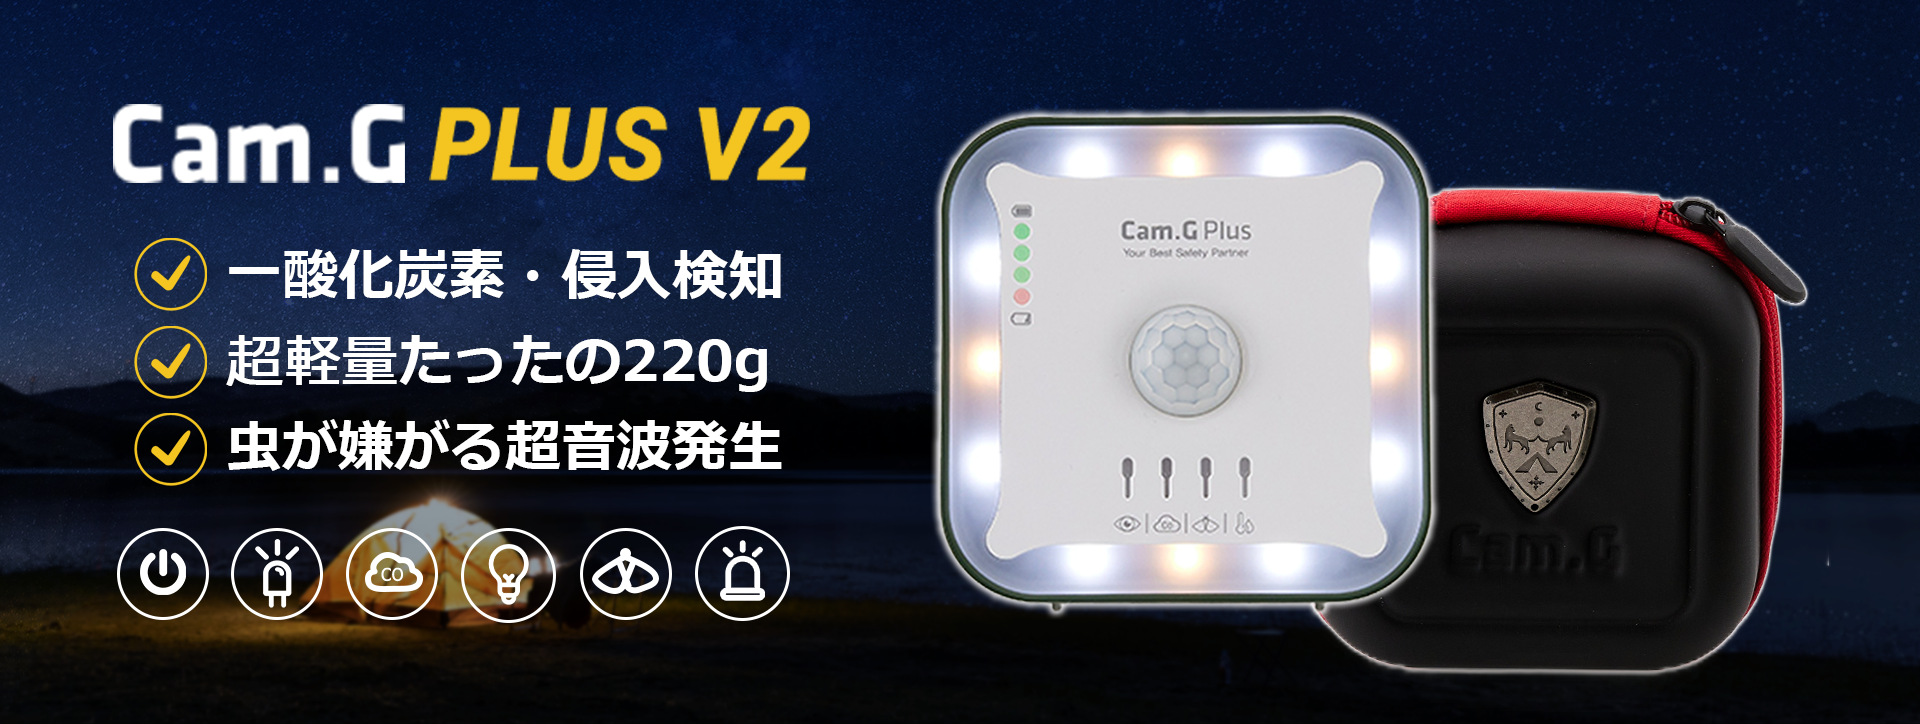 キャンプの必需品、一酸化炭素警報機といえば「Cam.G PLUS V2」